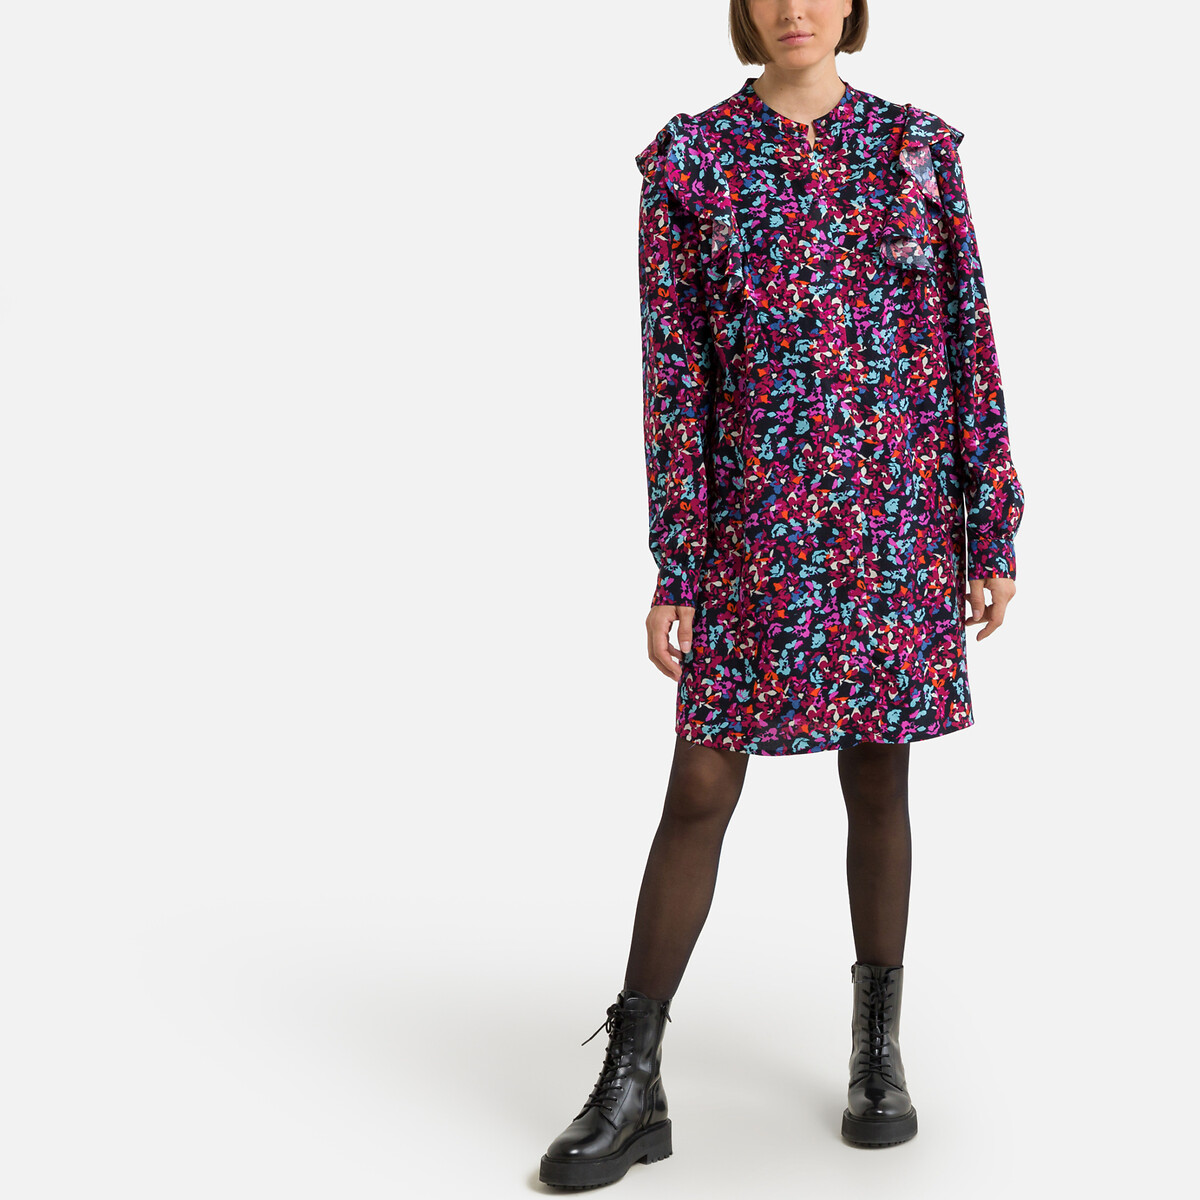 Платье С воротником-стойкой длинные рукава цветочный принт XS разноцветный LaRedoute, размер XS - фото 2